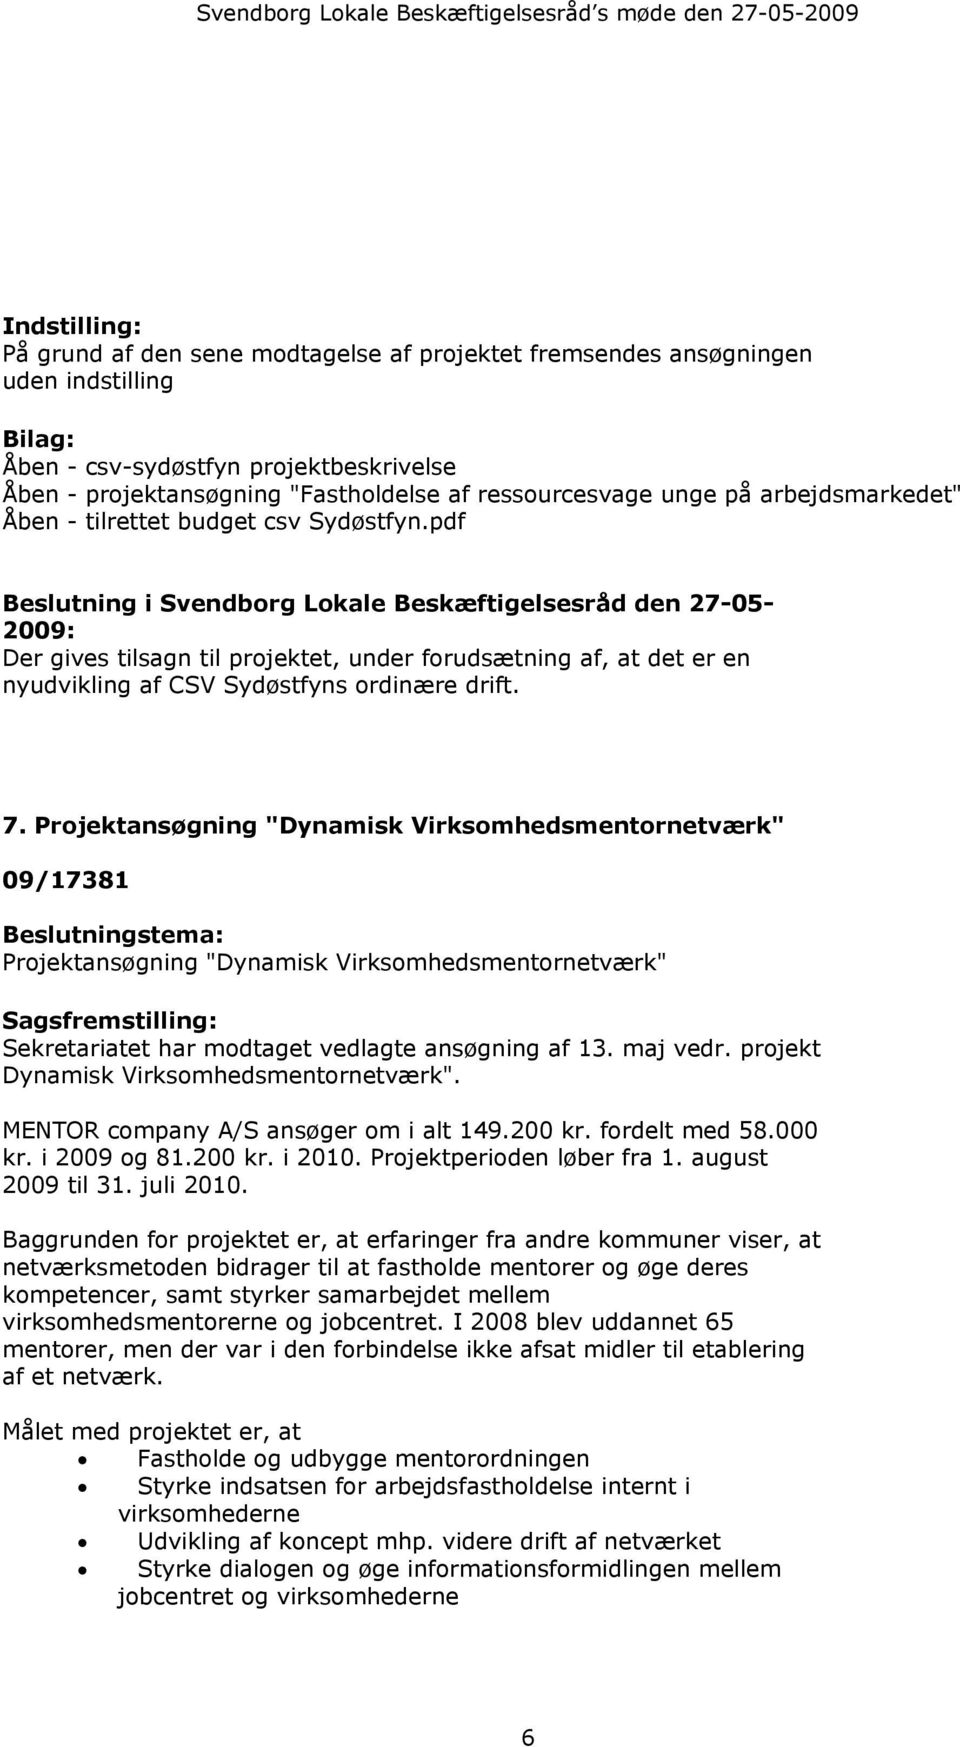 Projektansøgning "Dynamisk Virksomhedsmentornetværk" 09/17381 Beslutningstema: Projektansøgning "Dynamisk Virksomhedsmentornetværk" Sekretariatet har modtaget vedlagte ansøgning af 13. maj vedr.